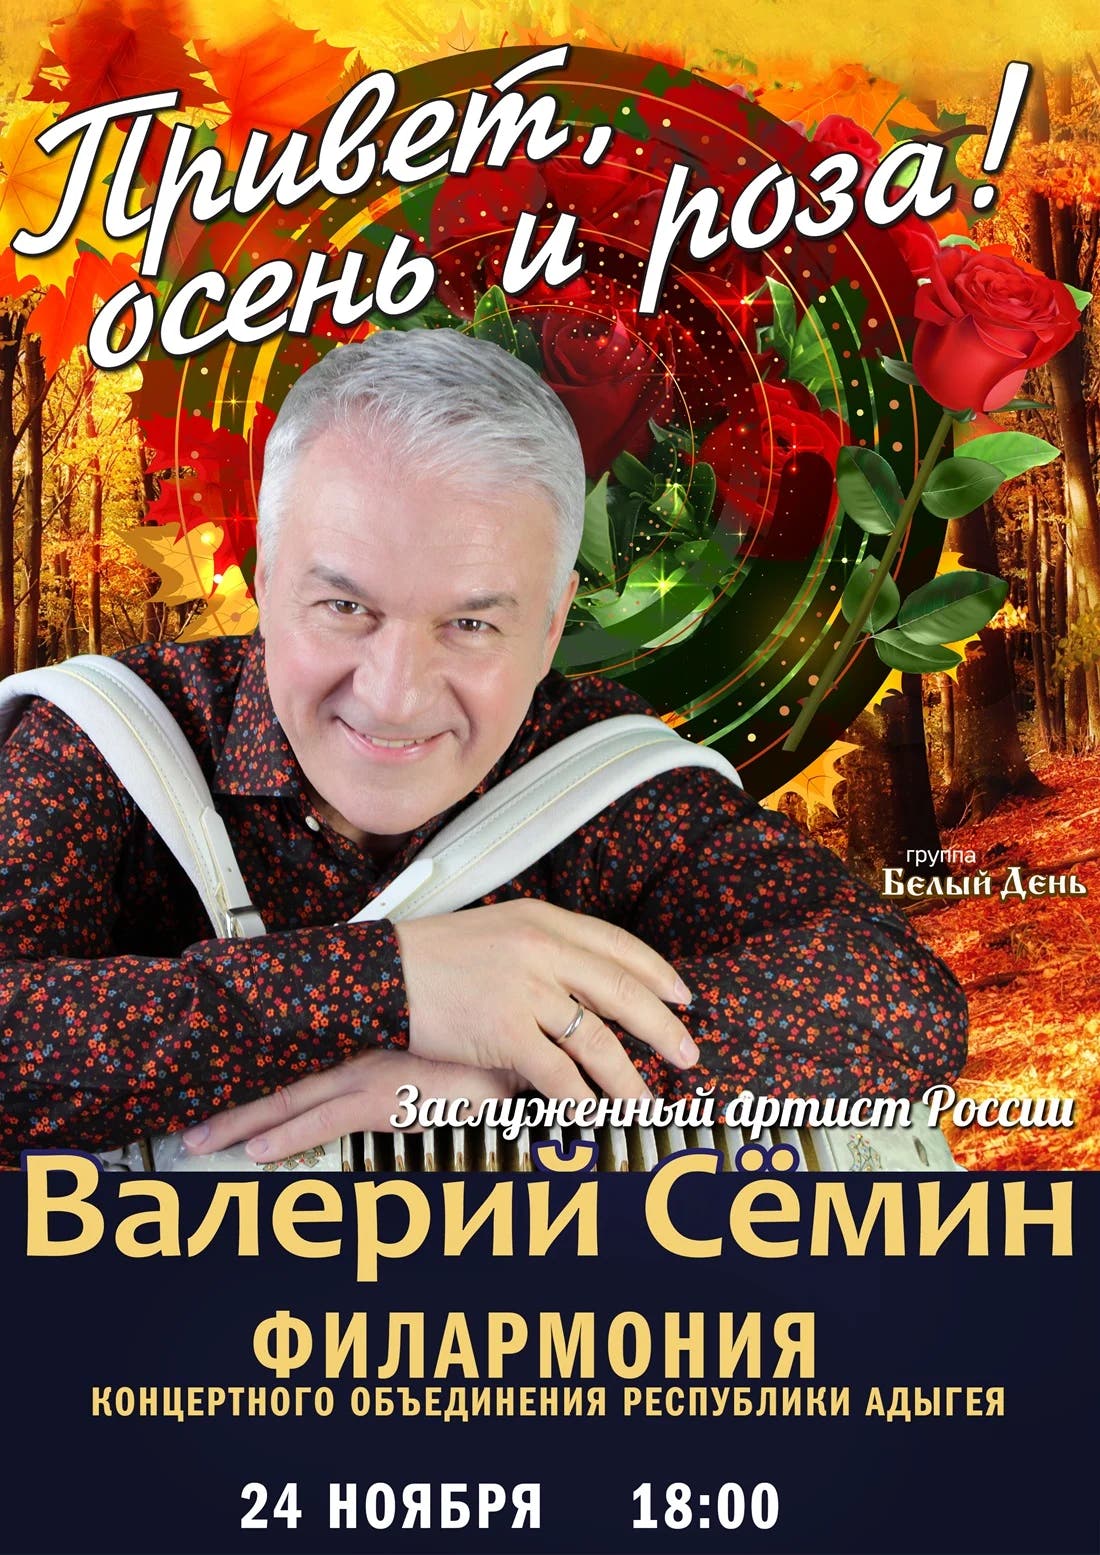 Афиша Валерий Сёмин. Концерт «Привет, осень и роза!»